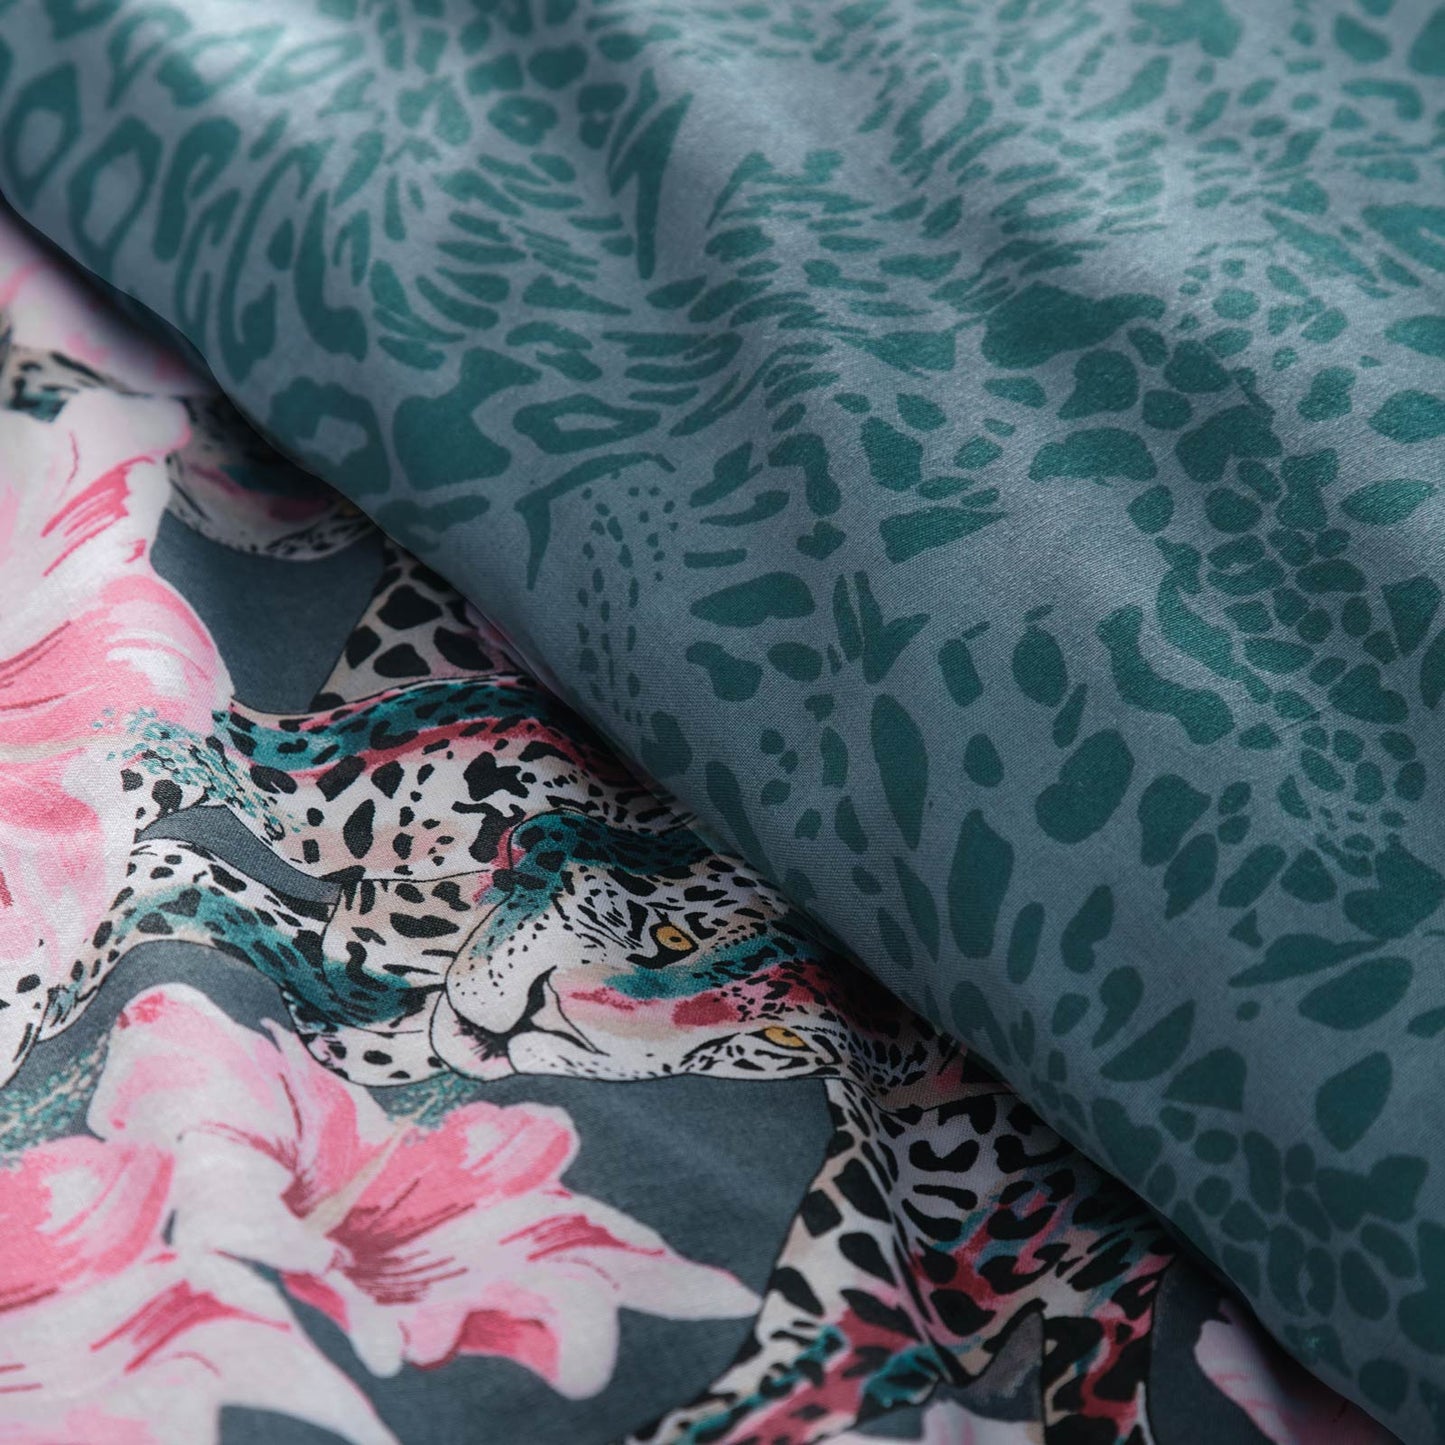 Floral Leopard Duvet Cover Set by Portfolio Home